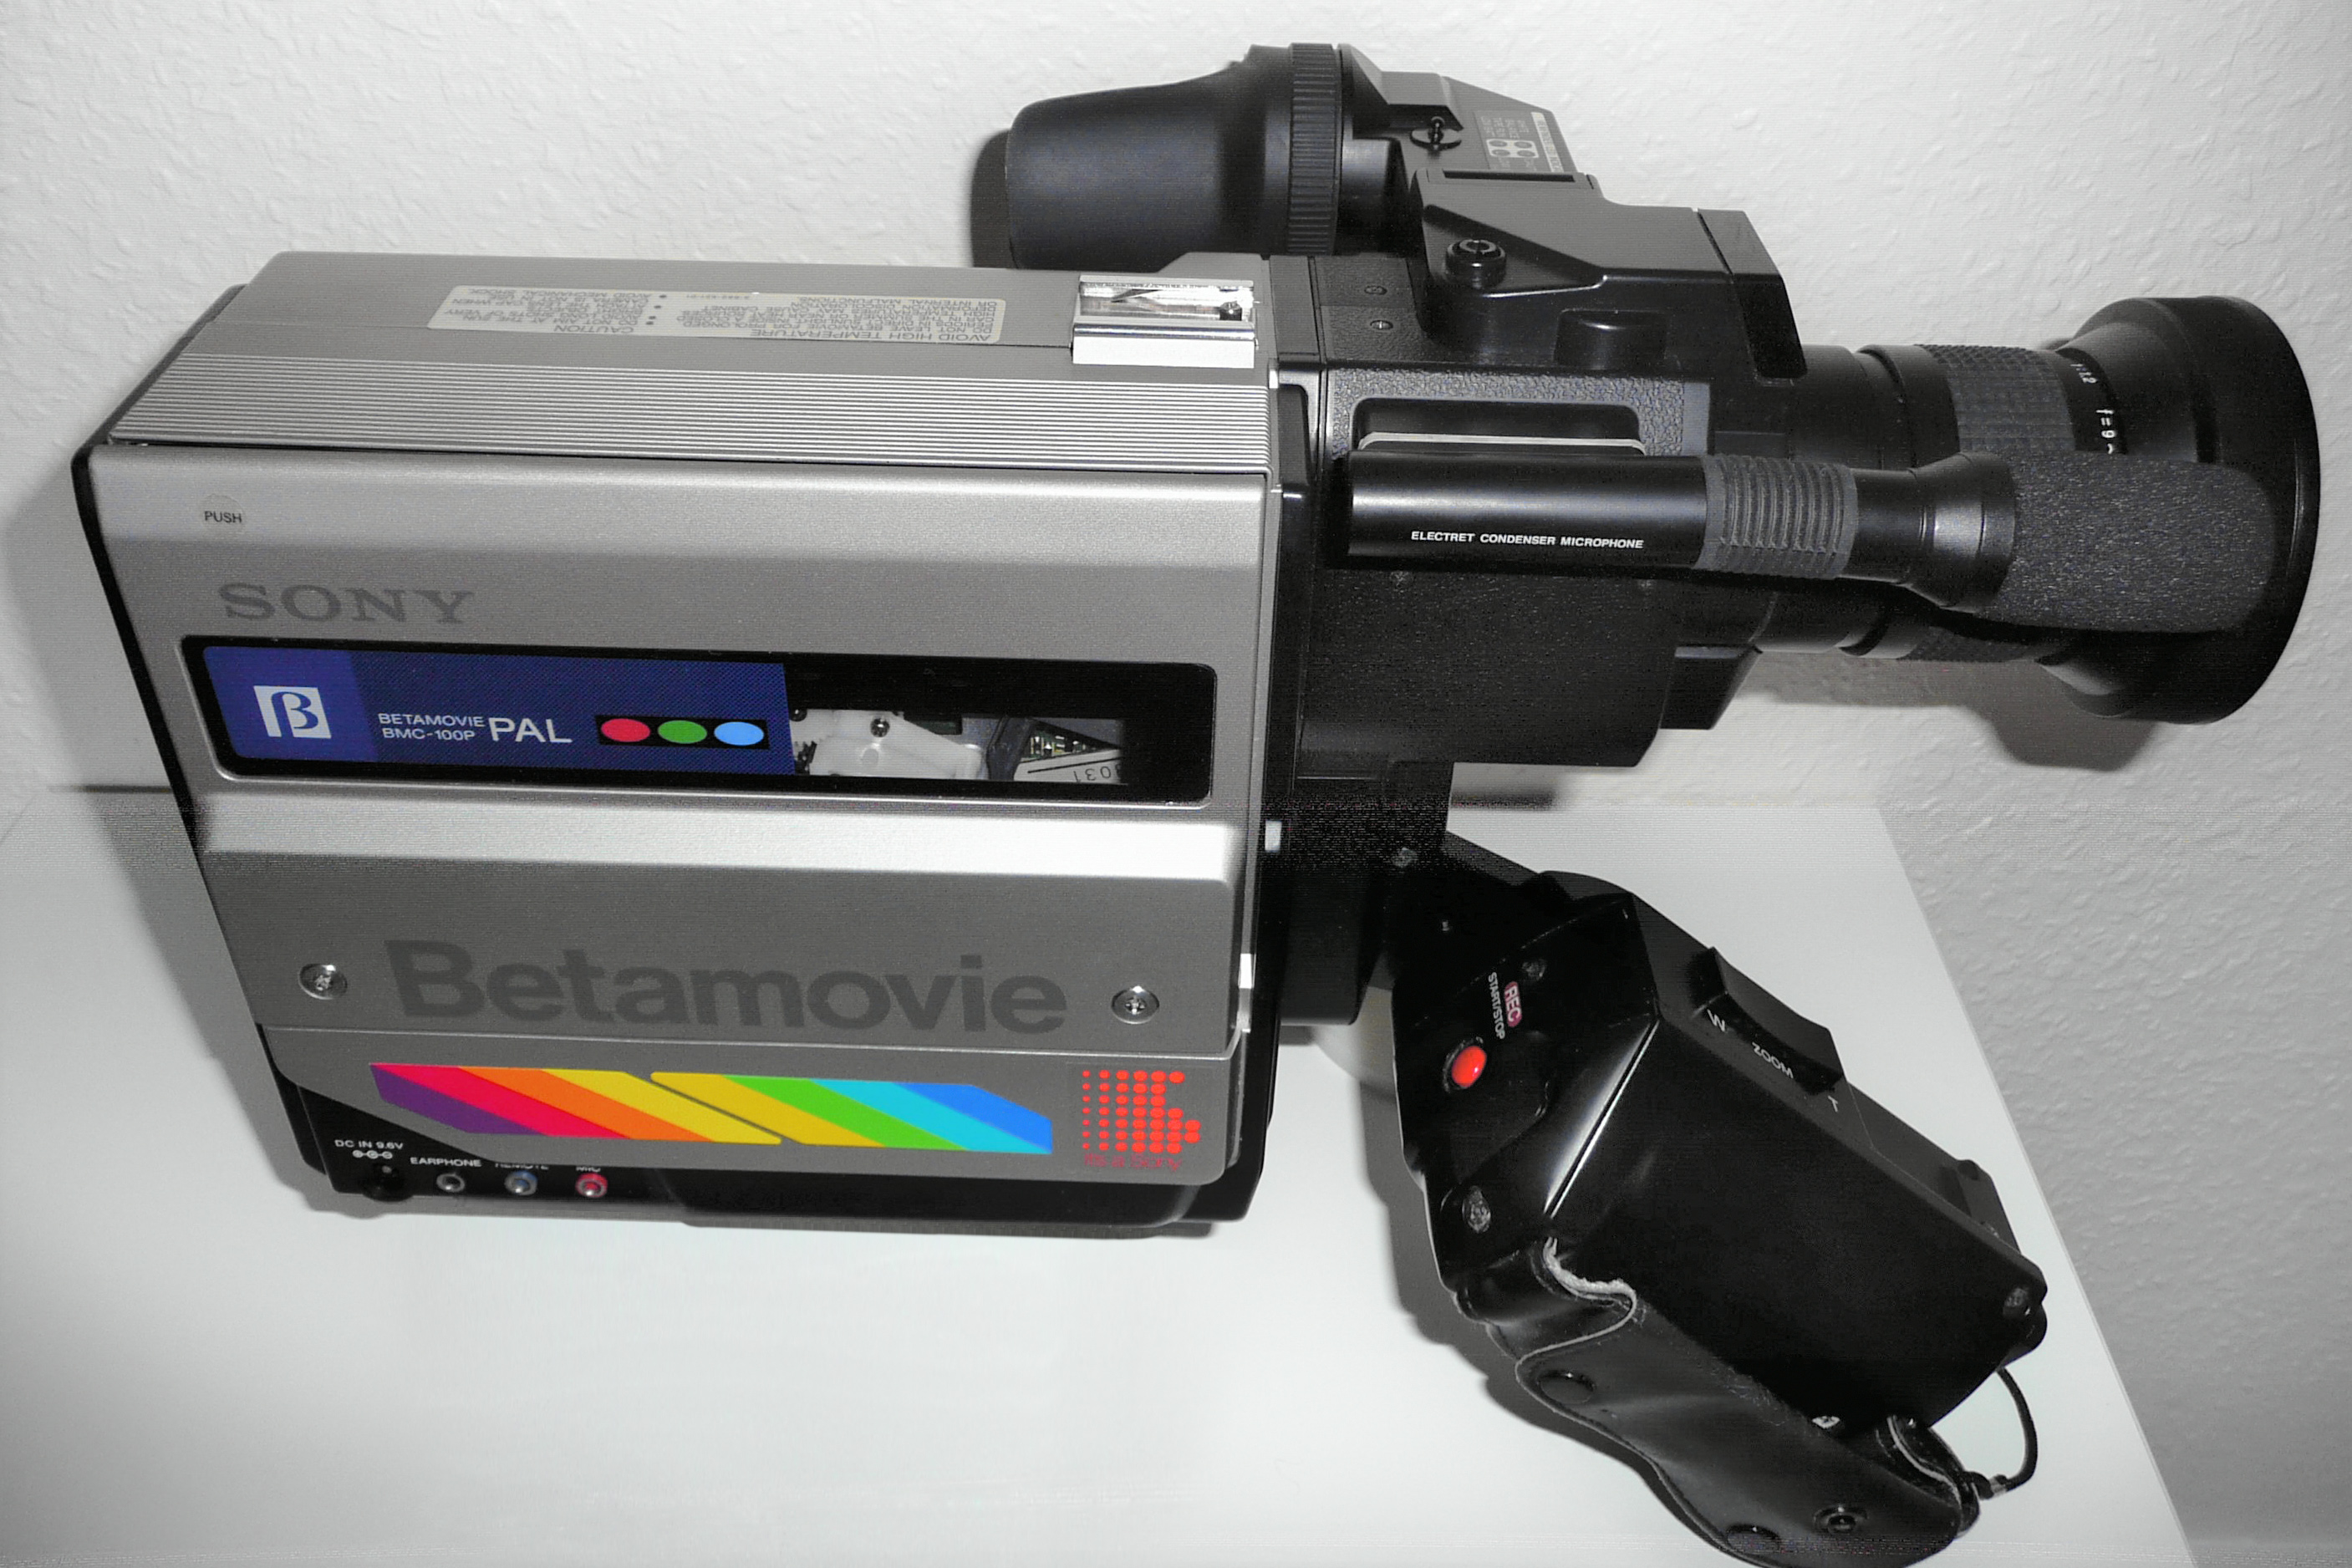 Cassette vidéo pour caméscope, 8 mm, standard, 120 minutes